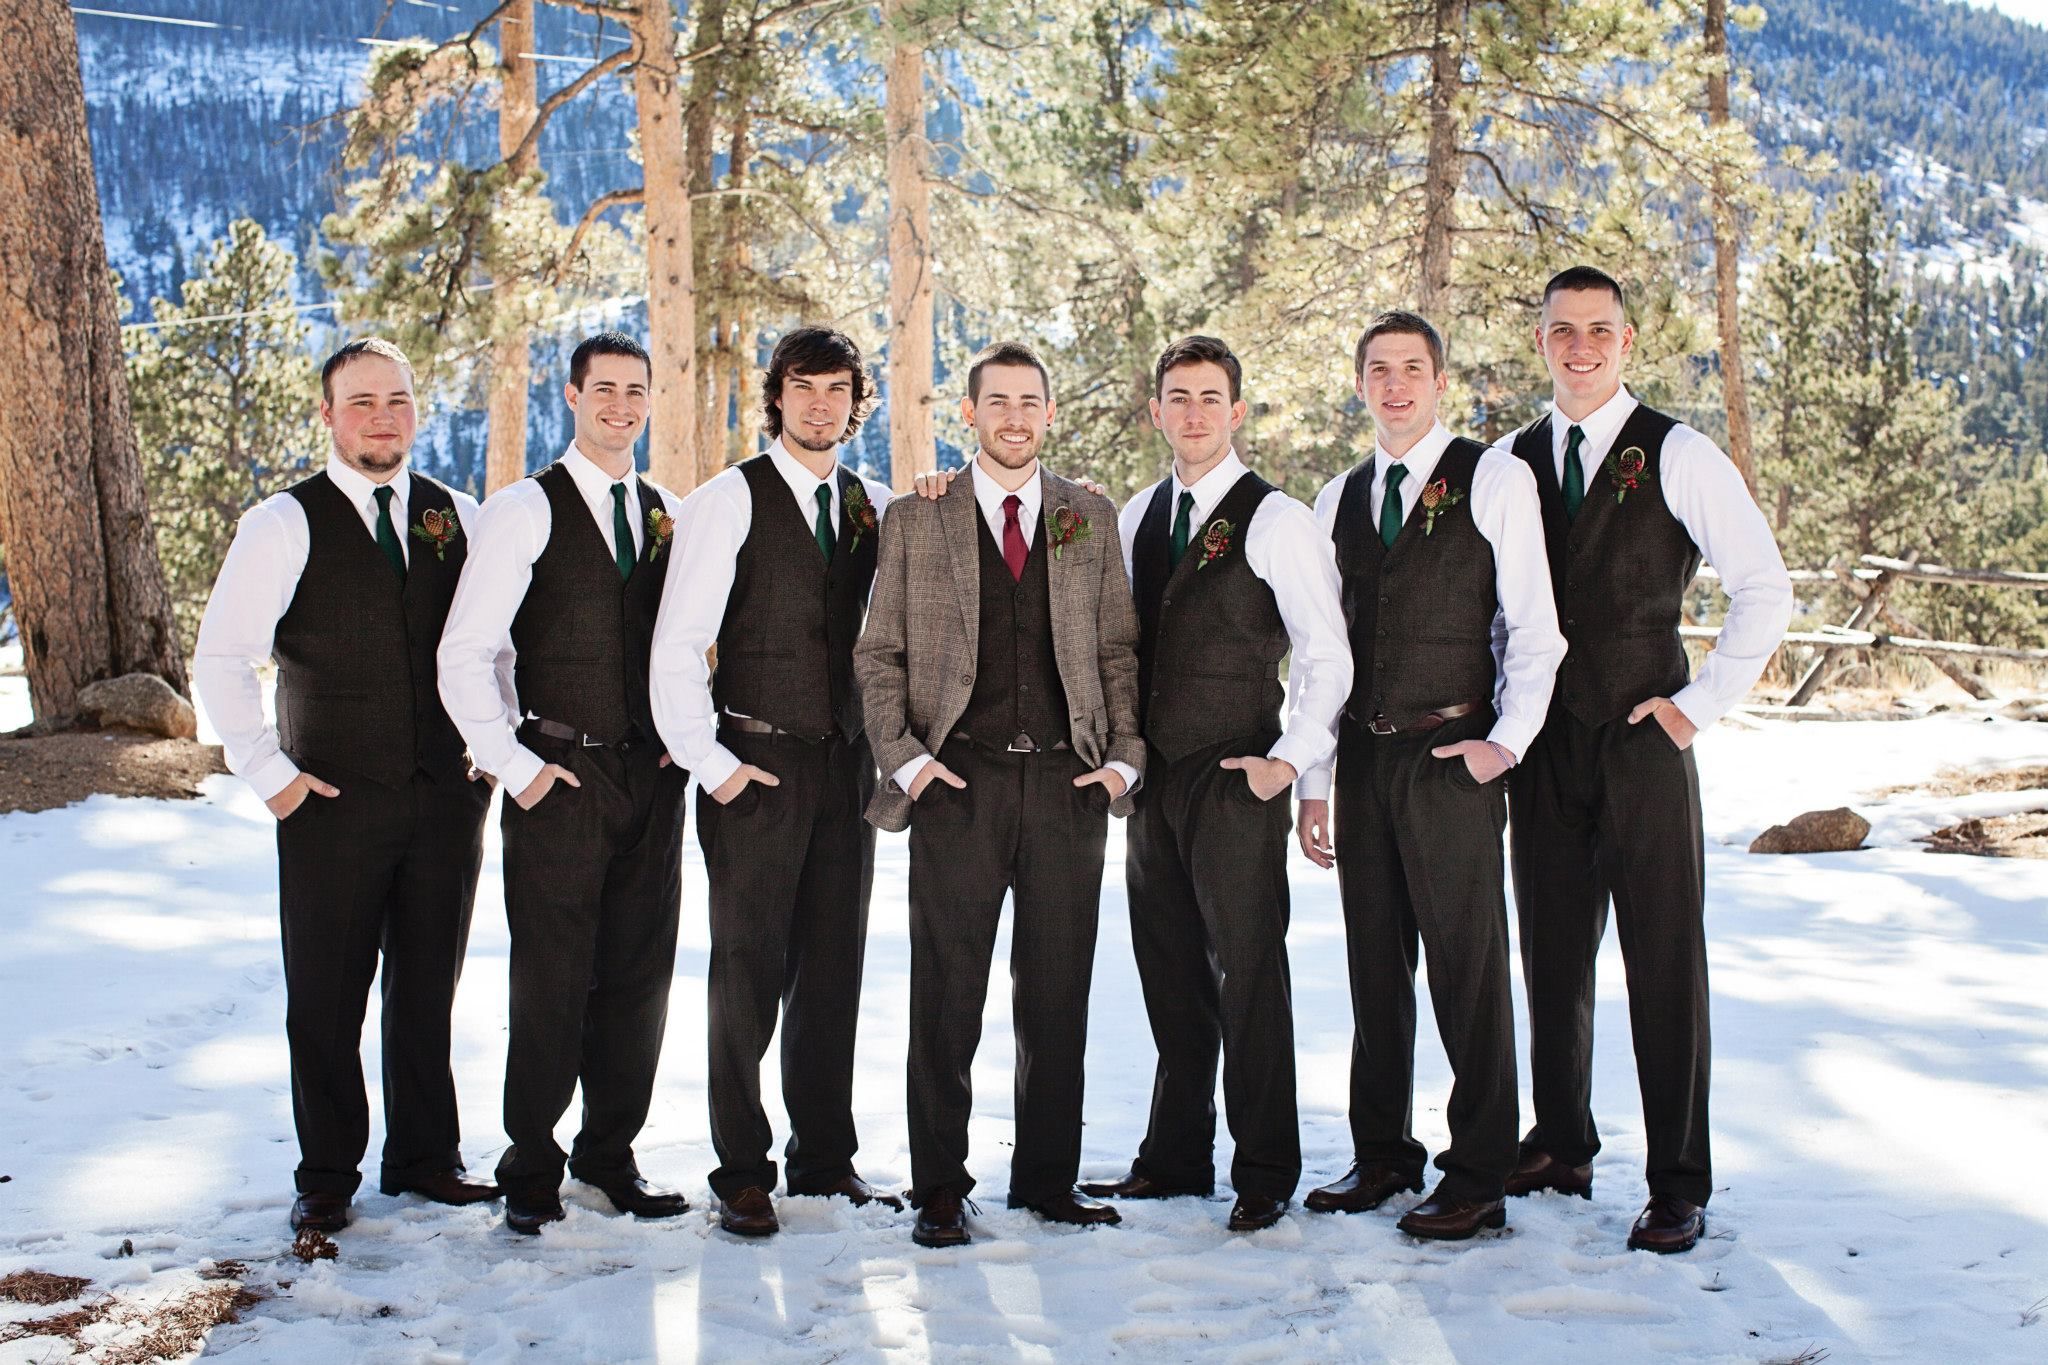 Winter Weddings: 12 Best Winter Wedding Styles for Groom & Groomsmen by BespokeDaily Blog